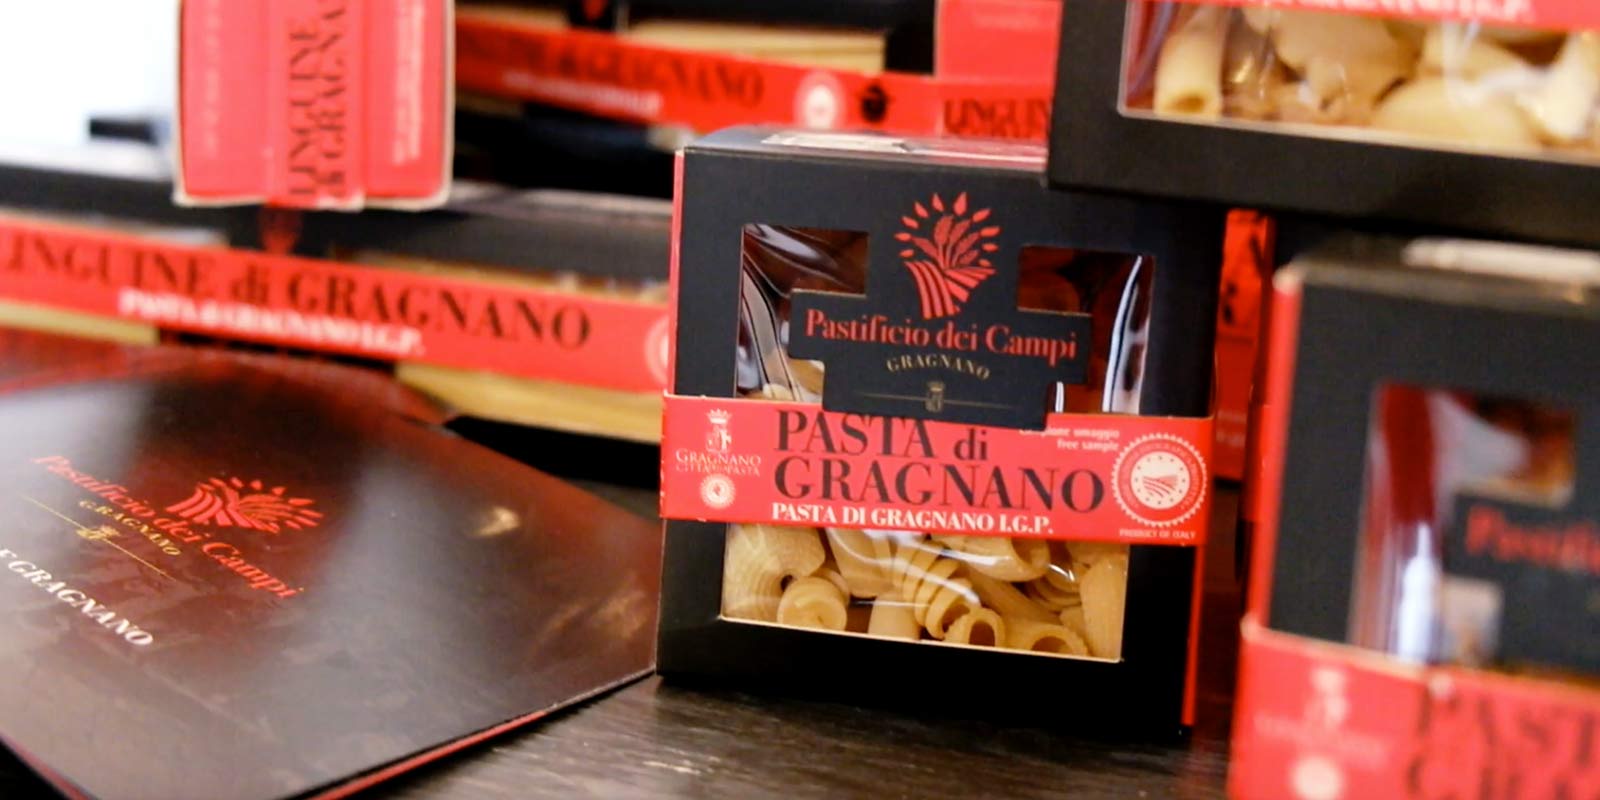 Pastifico dei Campi - Pasta di Gragnano IGP Pastificio dei Campi produce algunos clasicos italianos y algunas creaciones originales. La pasta se elabora con semola de trigo duro 100% italiana y se extruye mediante moldes de bronce.